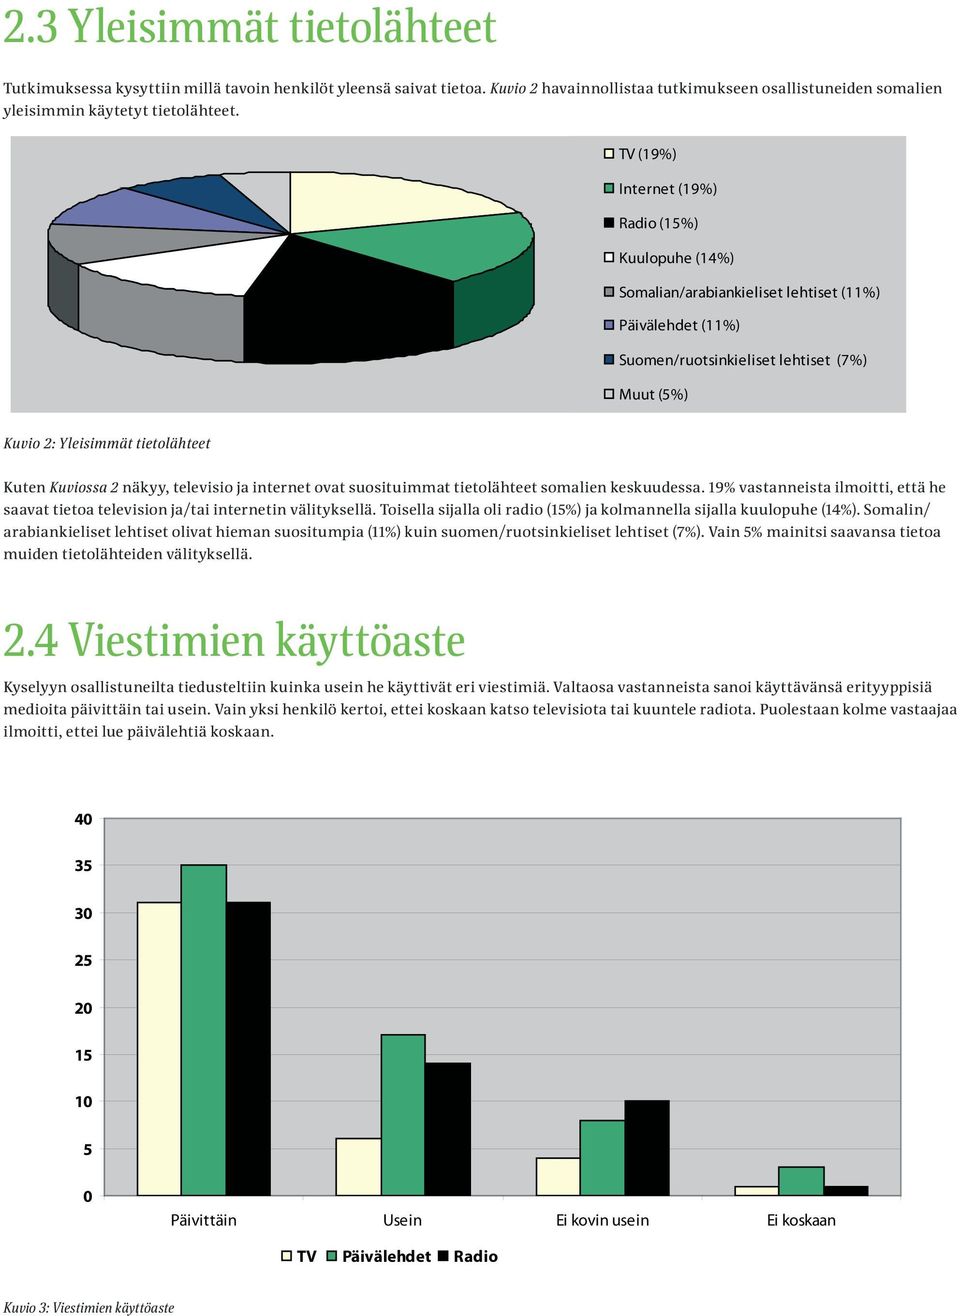 TV (19%) Internet (19%) Radio (15%) Kuulopuhe (14%) Somalian/arabiankieliset lehtiset (11%) Päivälehdet (11%) Suomen/ruotsinkieliset lehtiset (7%) Muut (5%) Kuvio 2: Yleisimmät tietolähteet Kuten